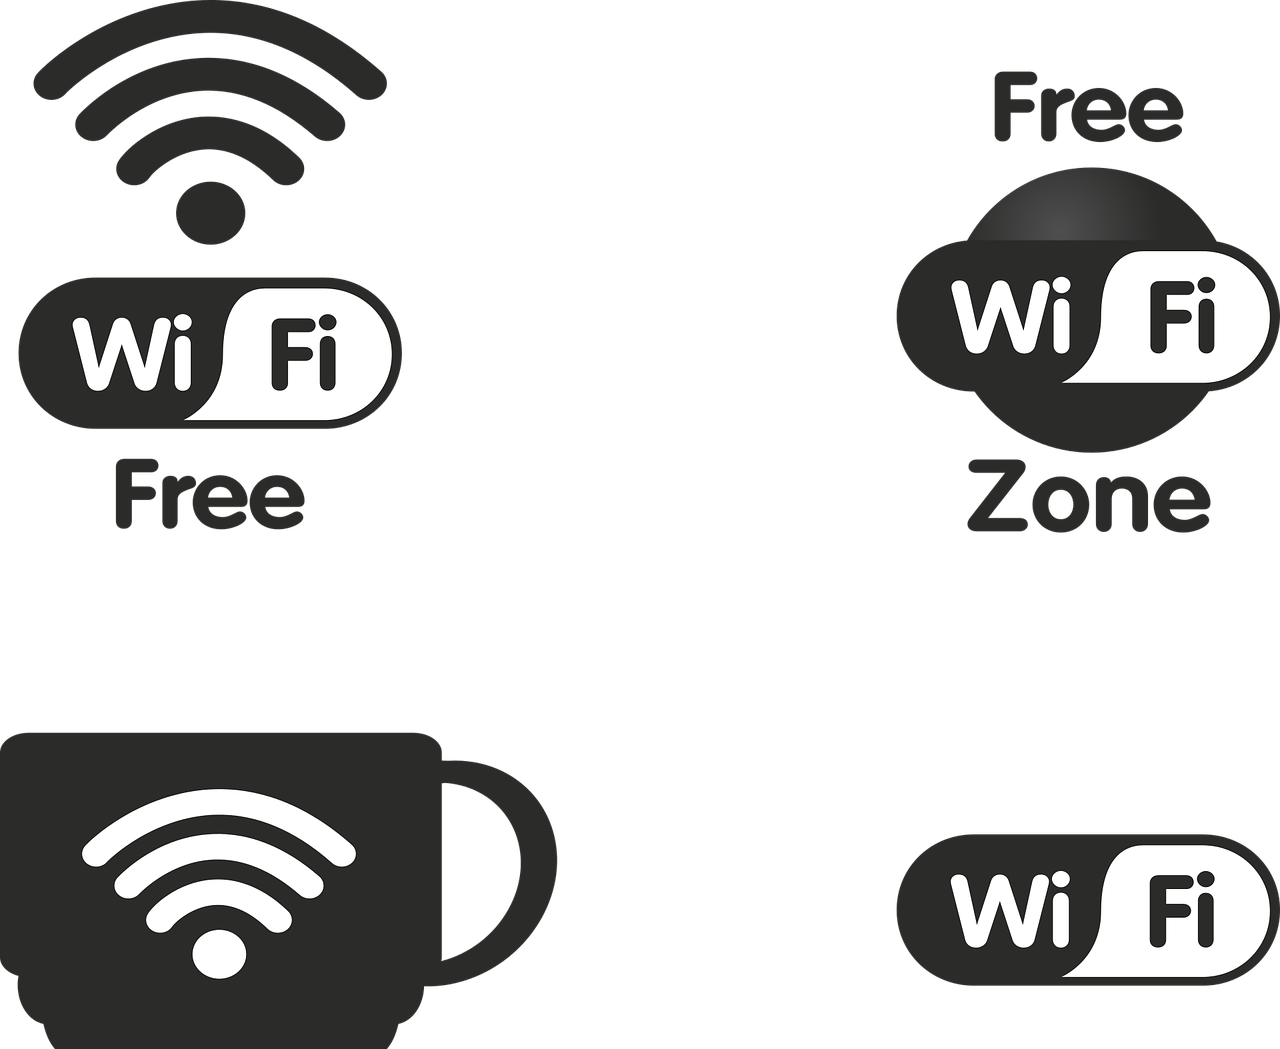 Картинки Wi-Fi: подборка классных иконок и клипартов